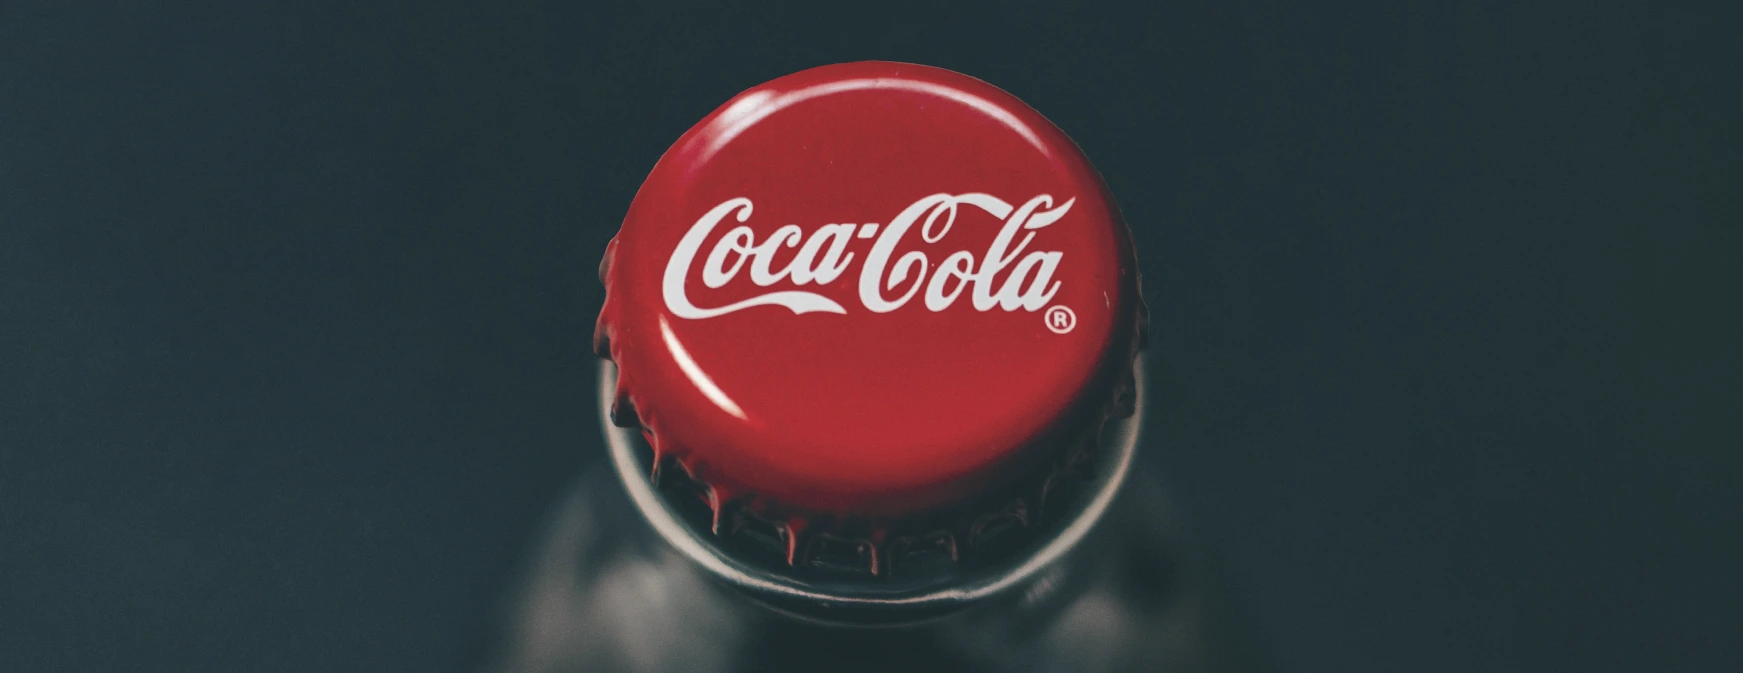 Garrafa da Coca-Cola com tampa em foco.